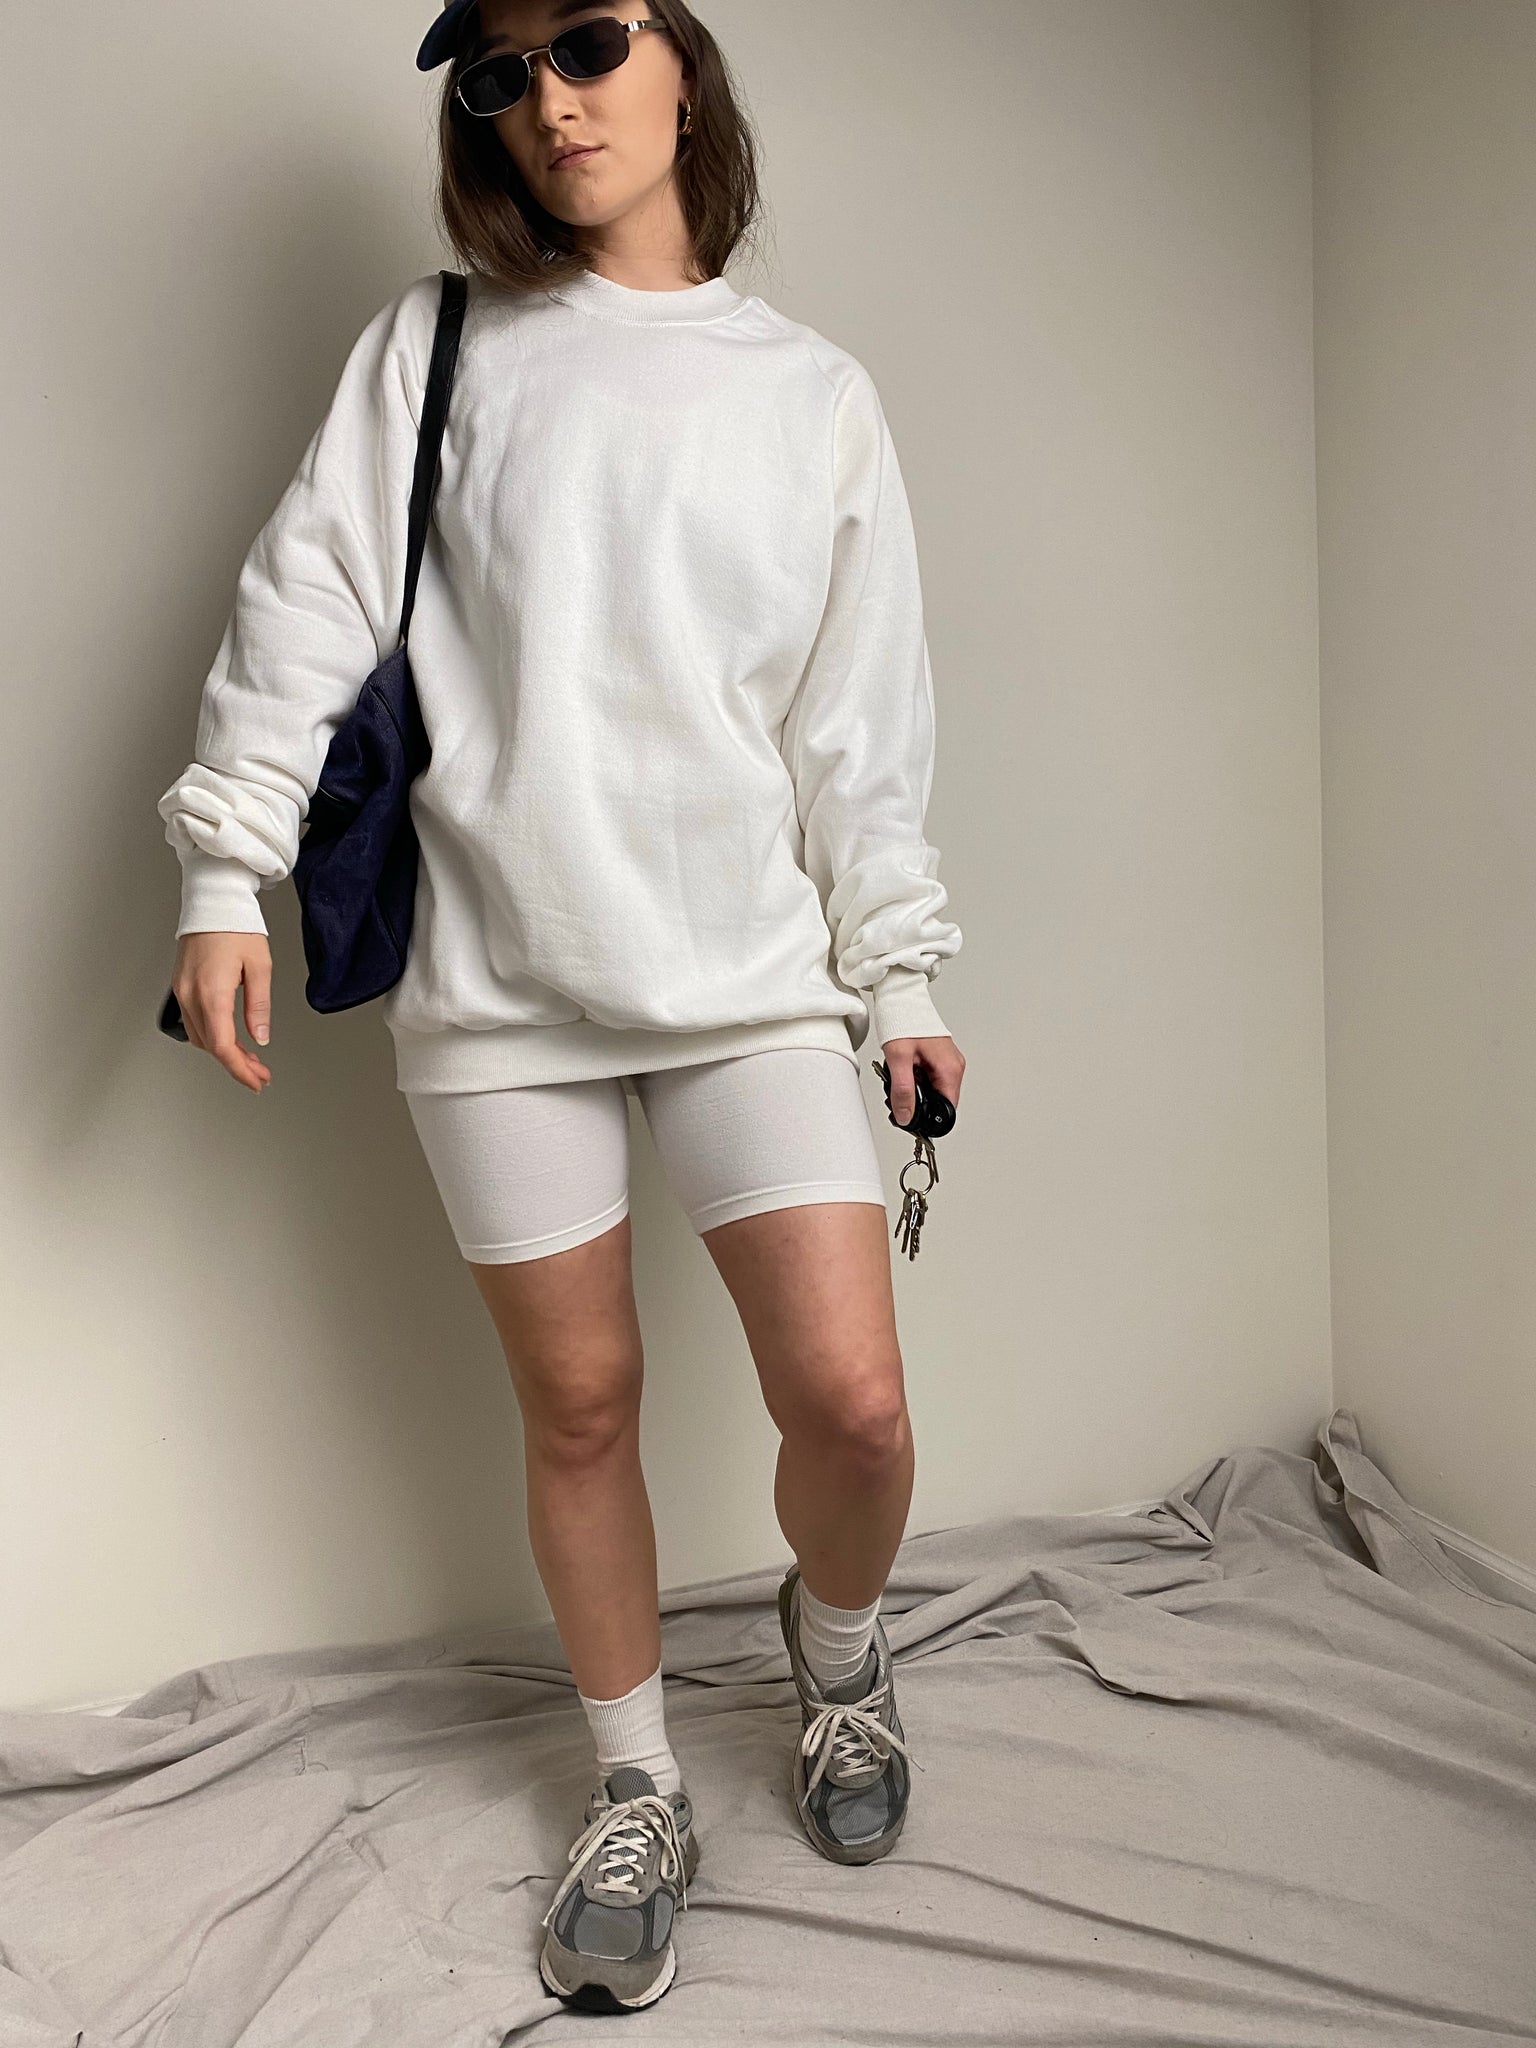 90s White Cotton Bike Shorts (fits S)